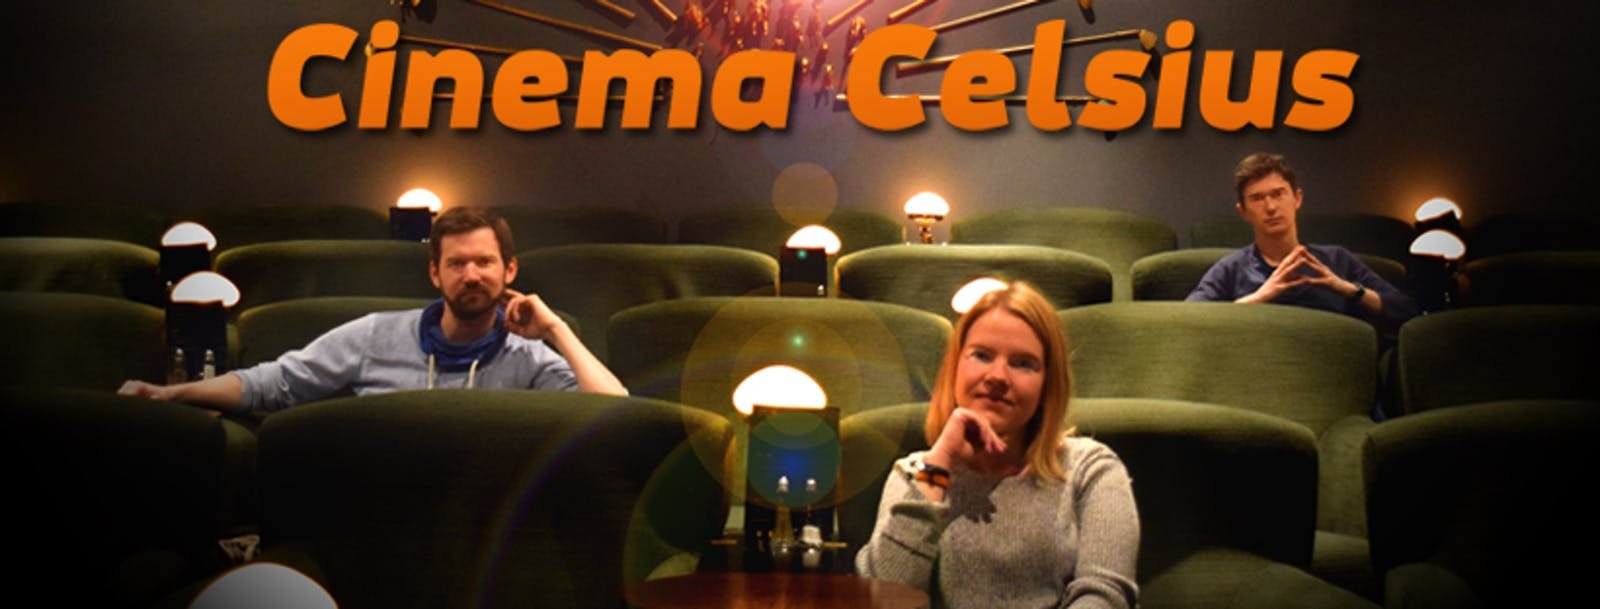 Cinema Celsius01